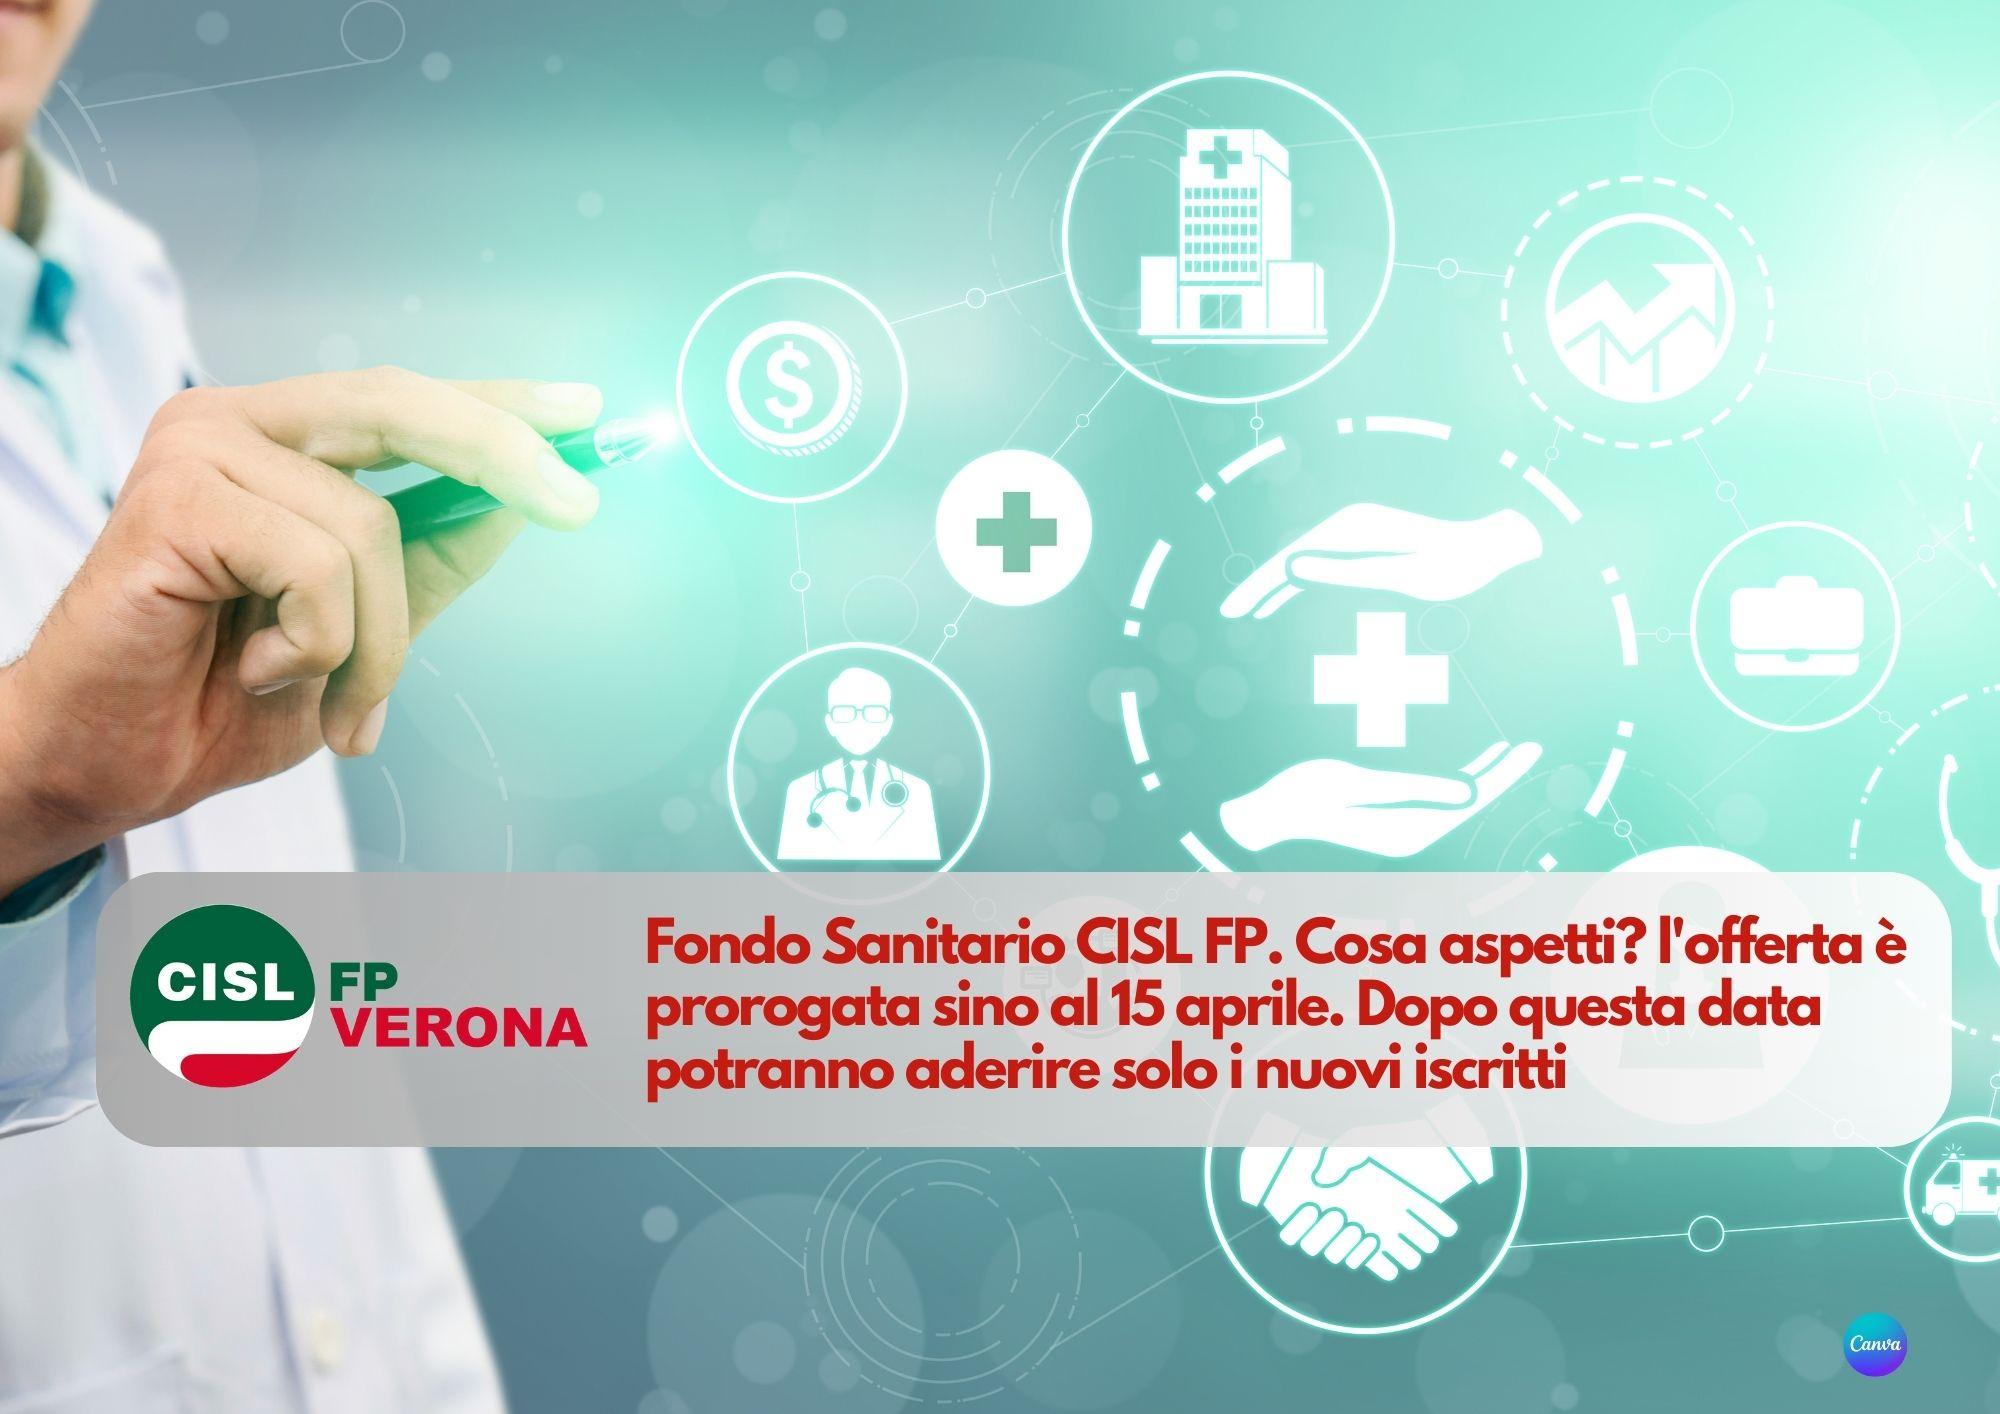 CISL FP Verona.  Fondo Sanitario CISL FP. Cosa aspetti? l'offerta è prorogata sino al 15 aprile